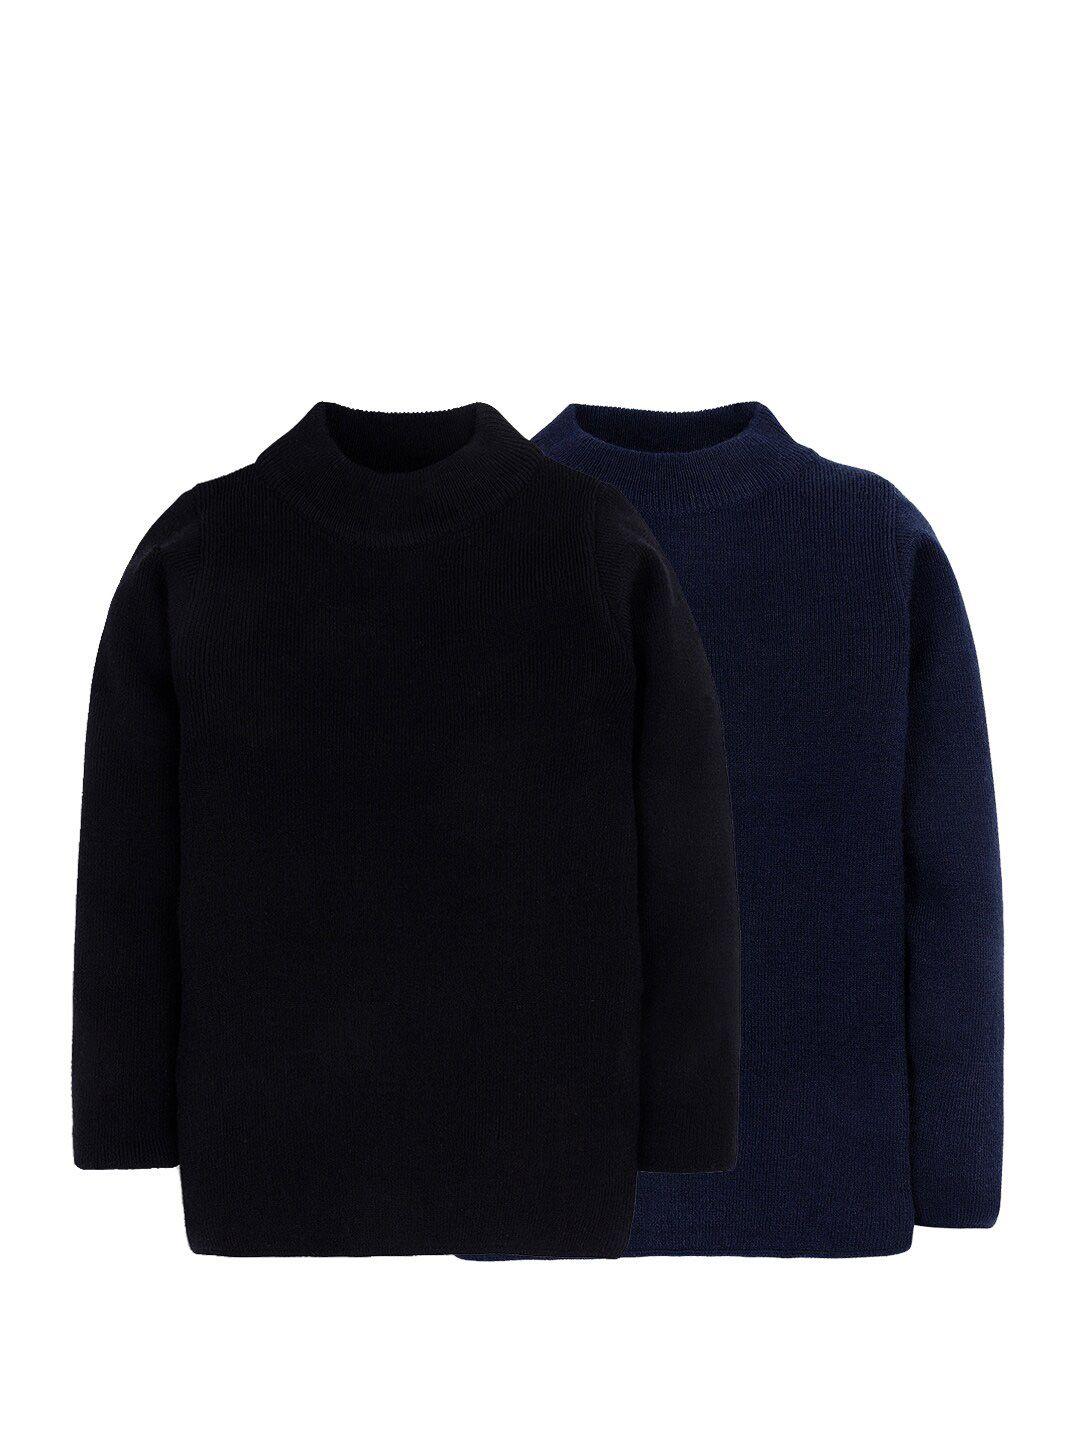 rvk pack of 2 unisex kids navy blue & black pullover